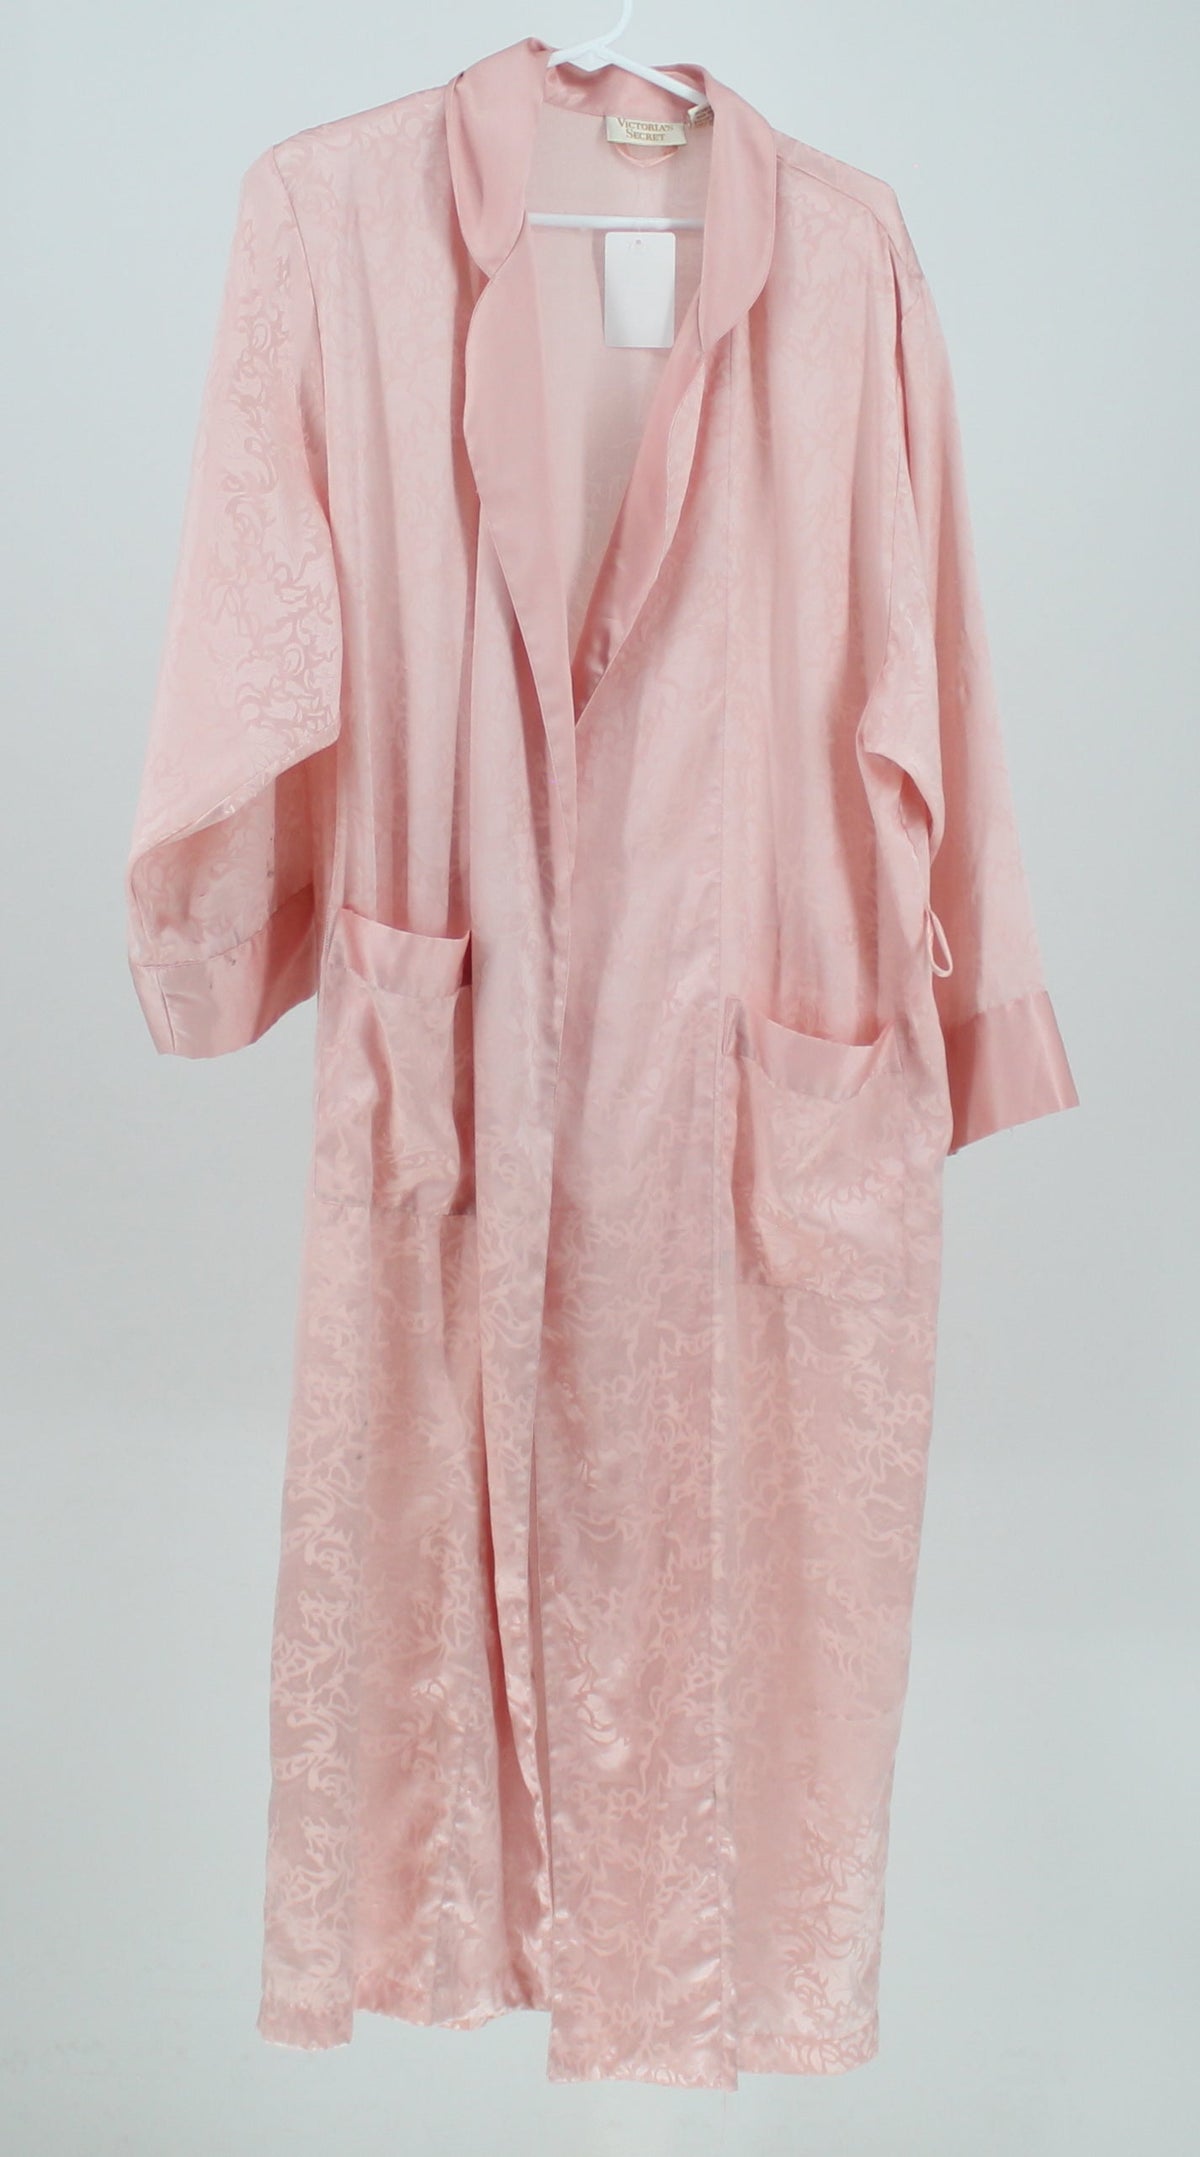 Victoria's Secret pink pattern robe